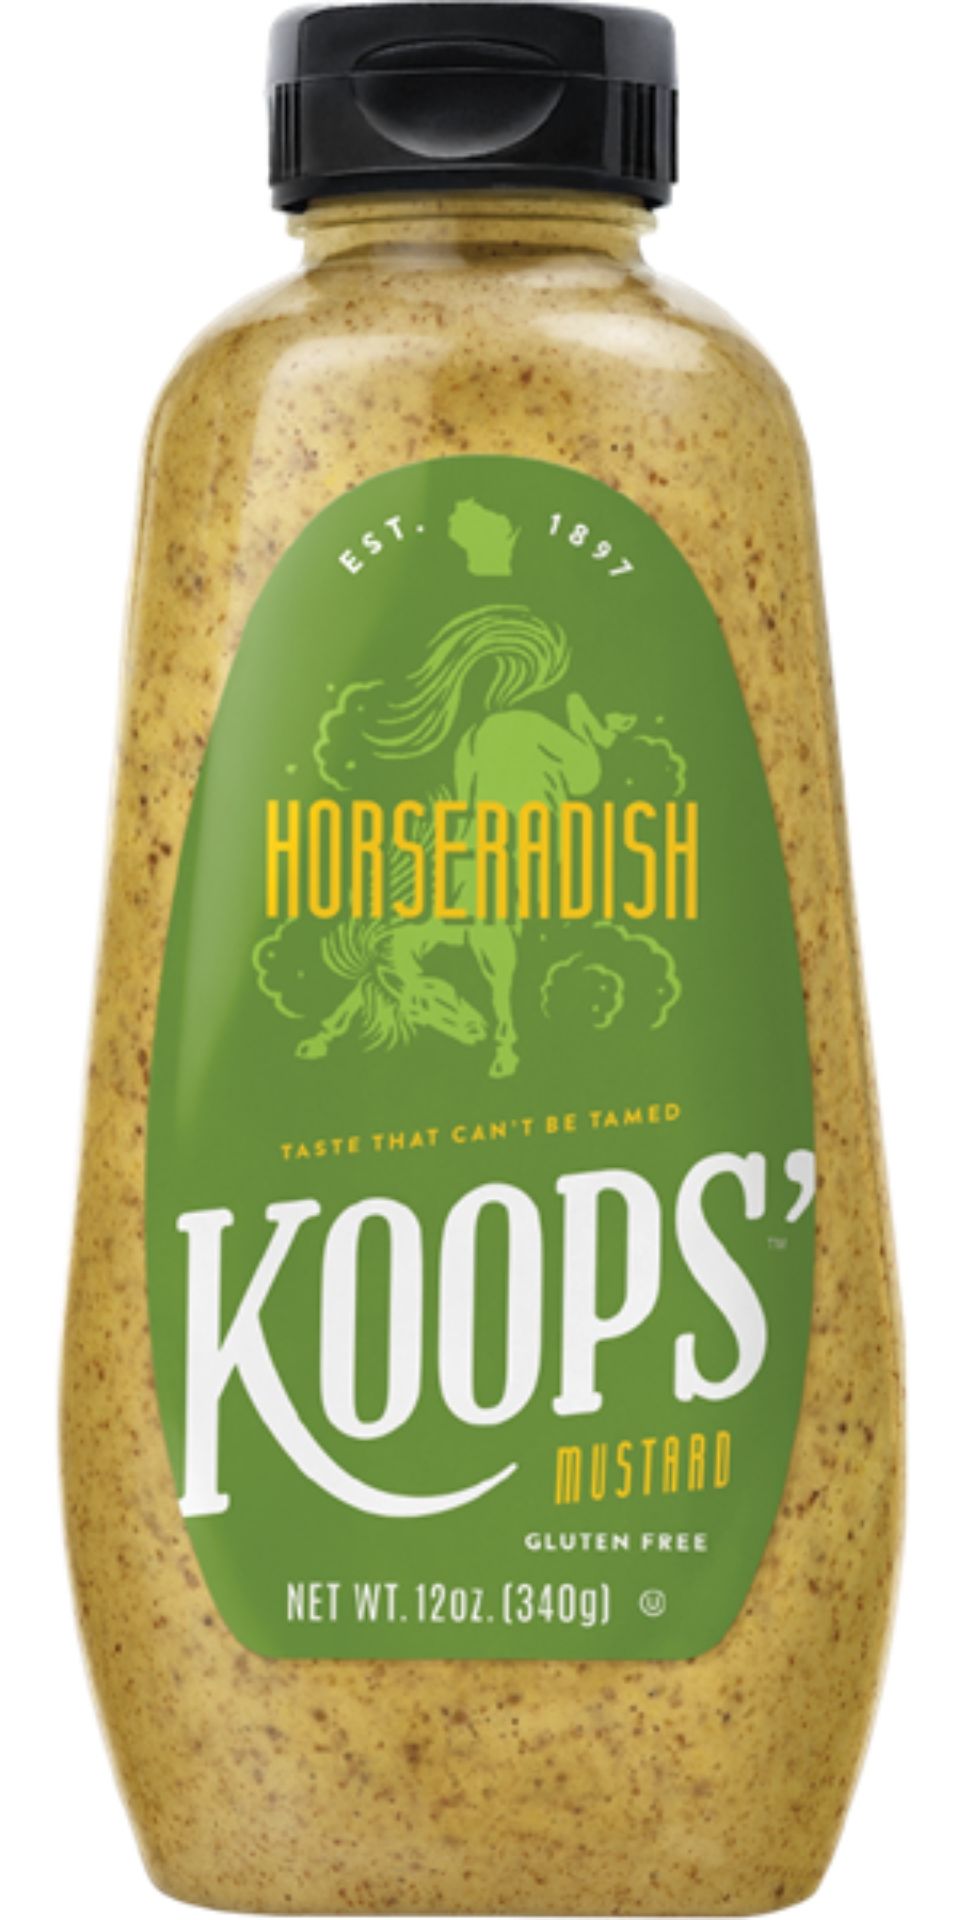 koops' horseradish mustard